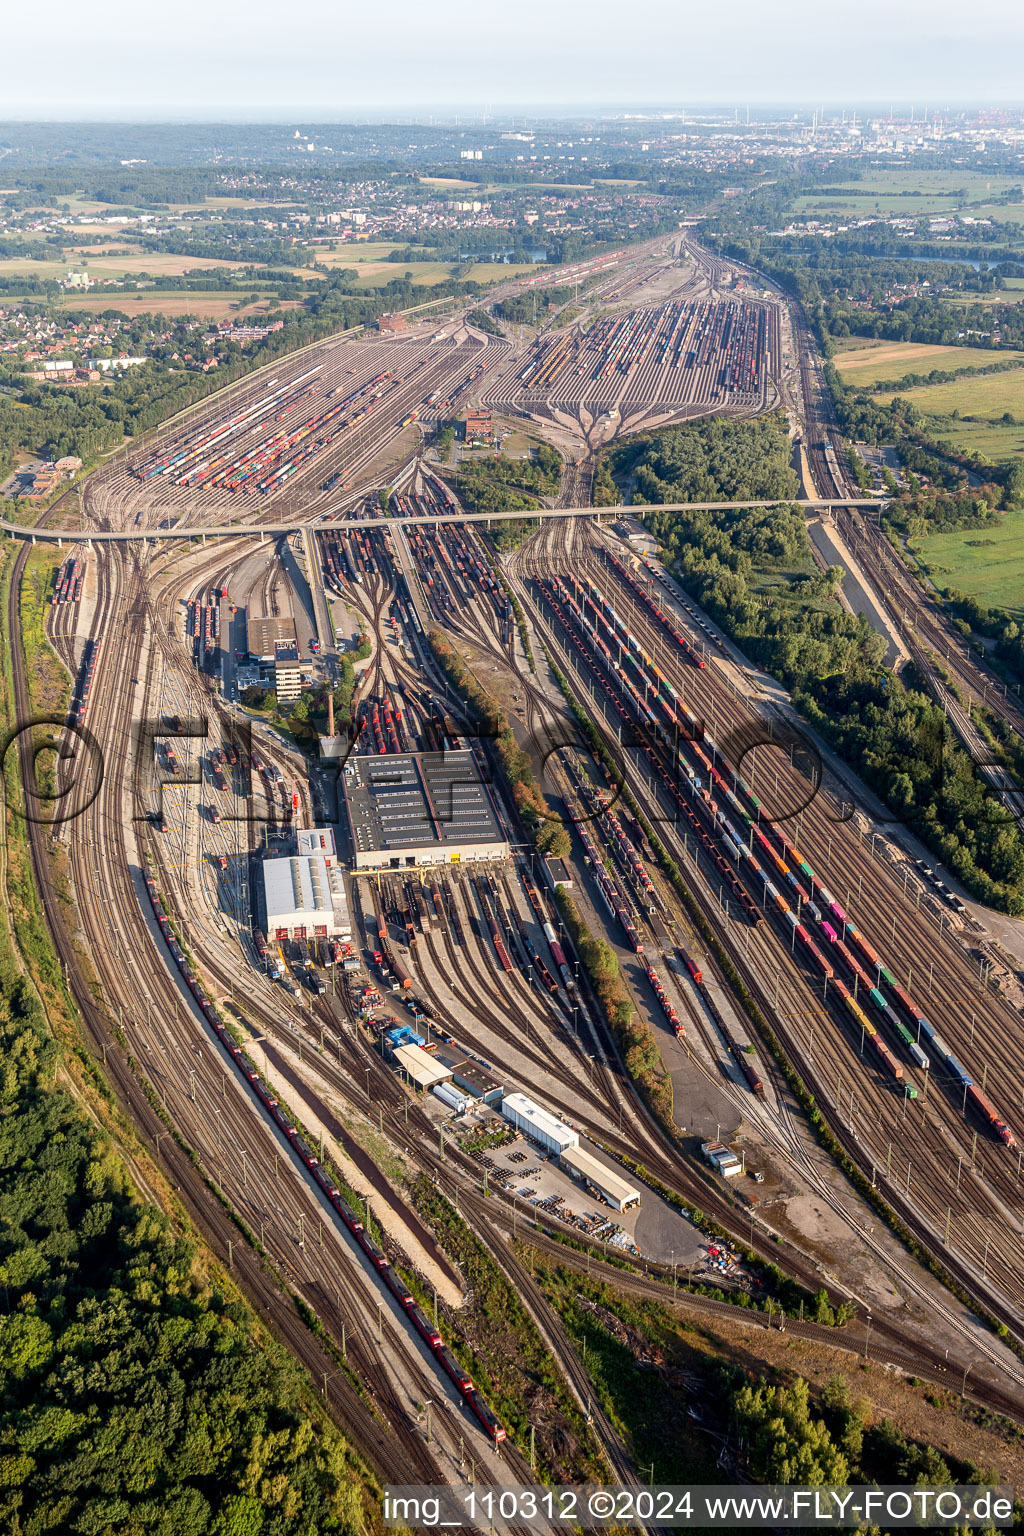 Vue aérienne de Lignes ferroviaires et voies sur les voies d'évitement et les voies de manœuvre de la gare de triage et de fret de la Deutsche Bahn Maschen dans le quartier Maschen à Seevetal à Maschen dans le département Basse-Saxe, Allemagne